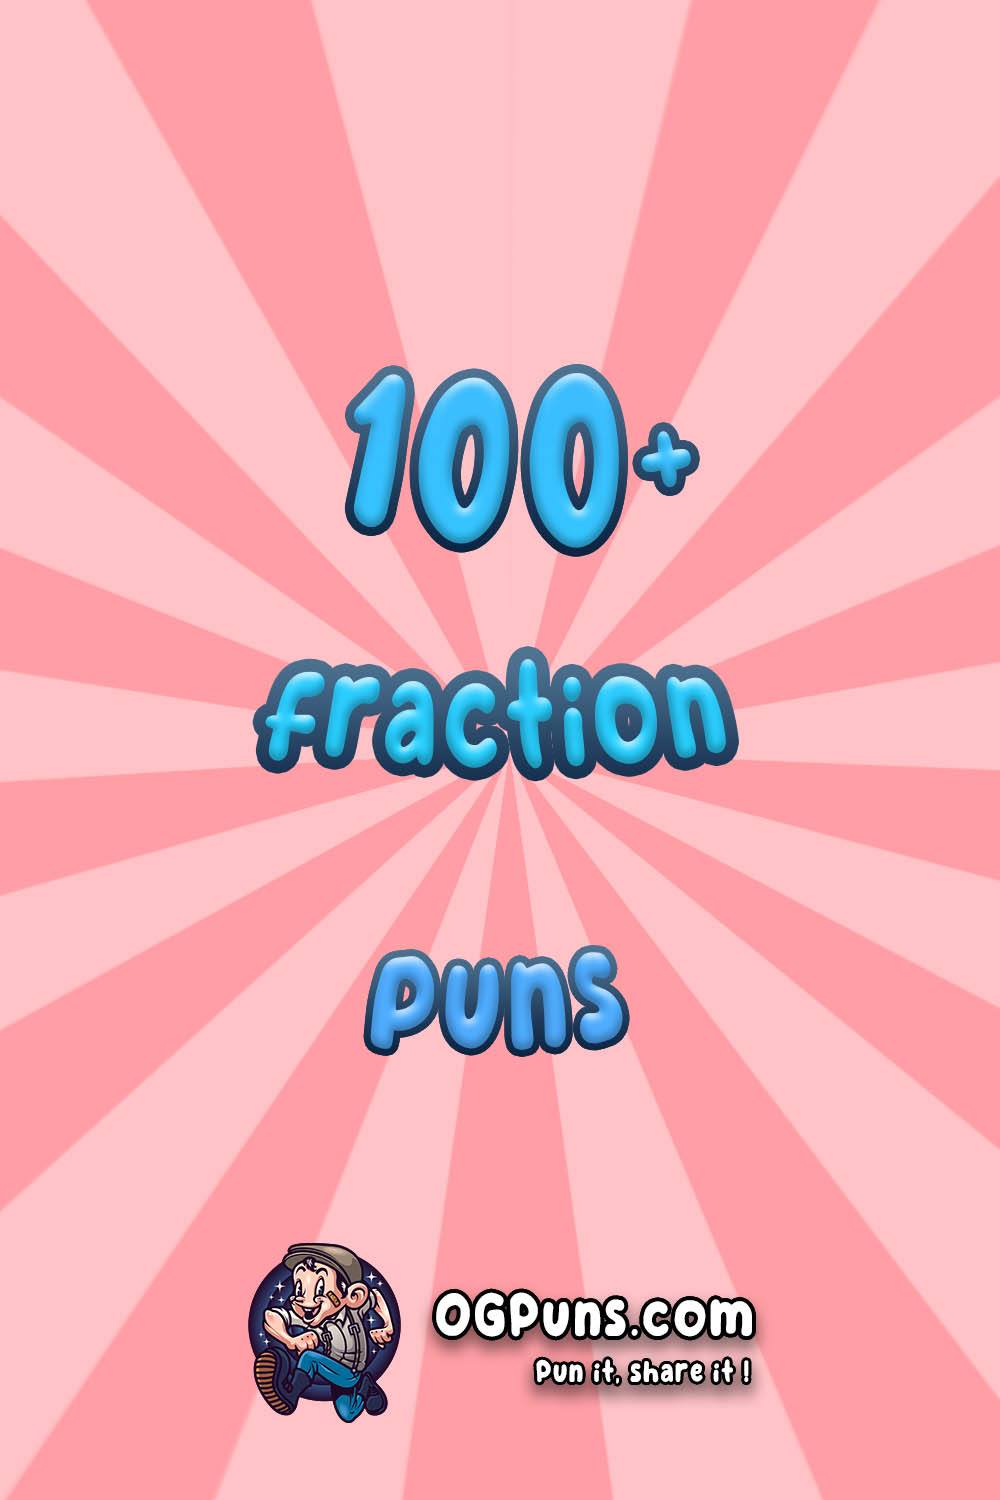 Fraction puns Image for Pinterest